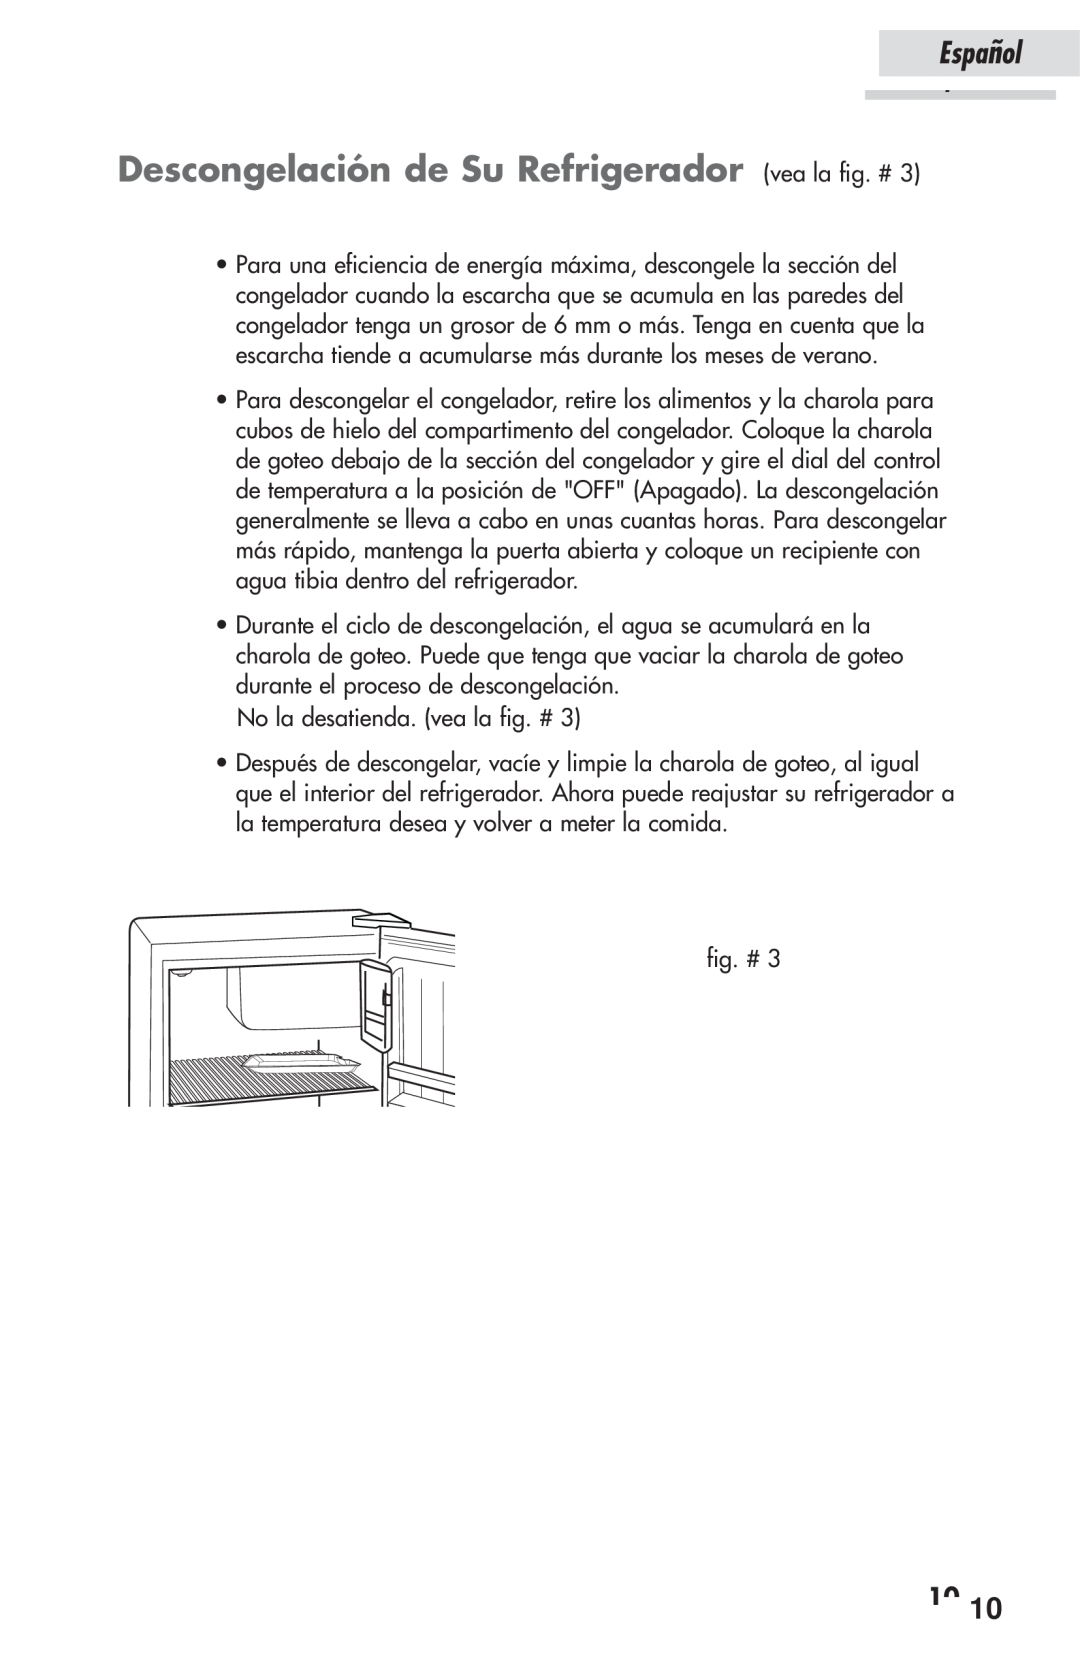 Haier HSP03WNAWW user manual Descongelación de Su Refrigerador vea la fig. #, Español, 1010 